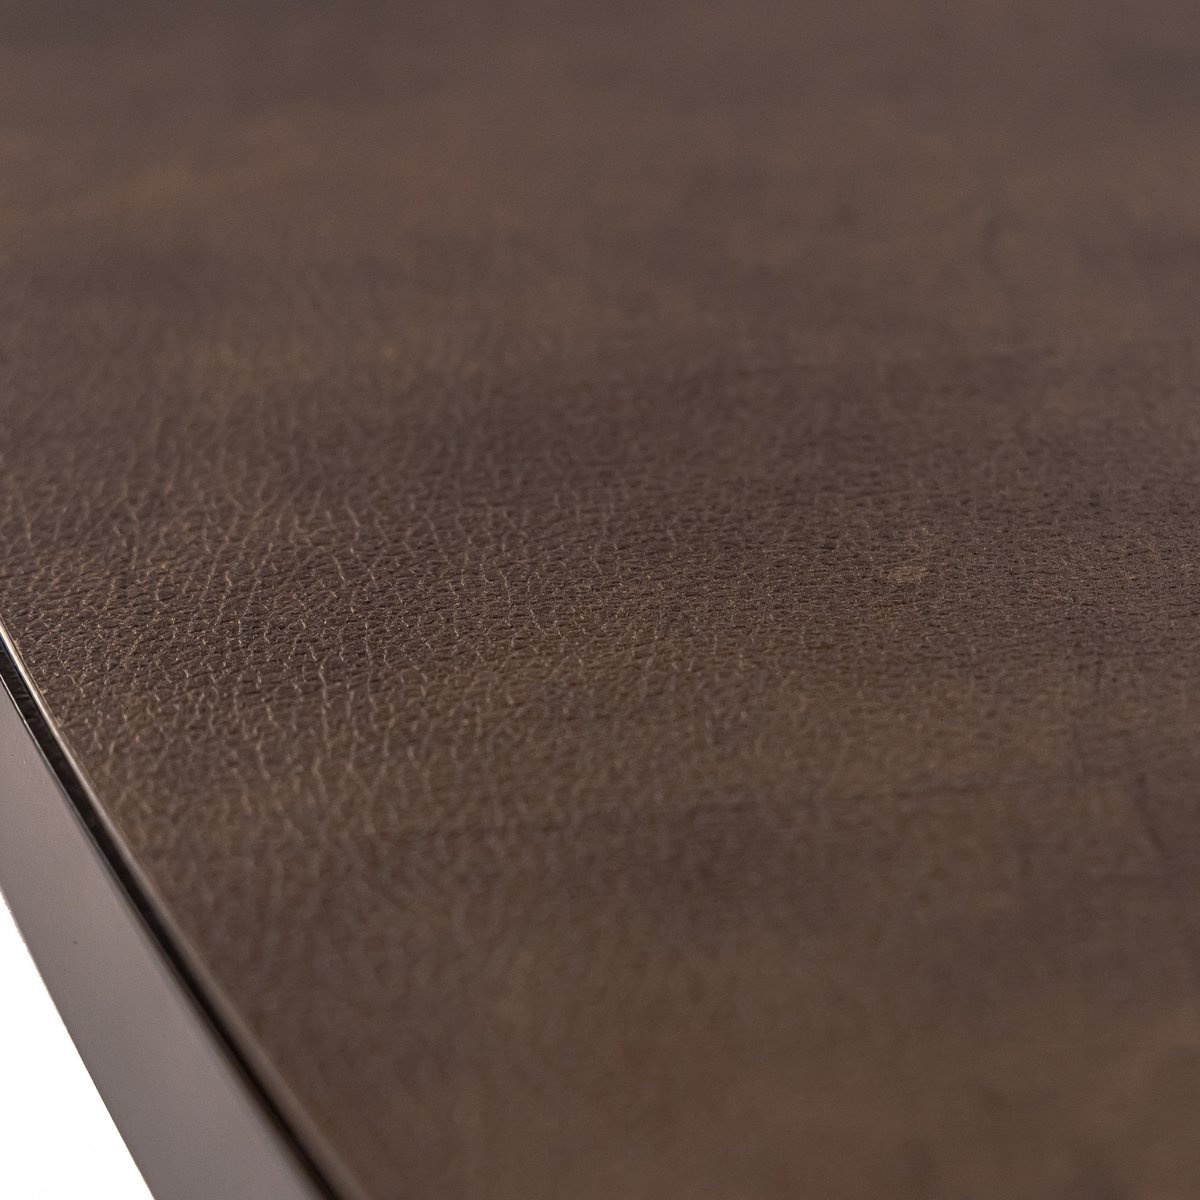 Stalux Ovale eettafel 'Mees' 210 x 100cm, kleur zwart / lederlook bruin